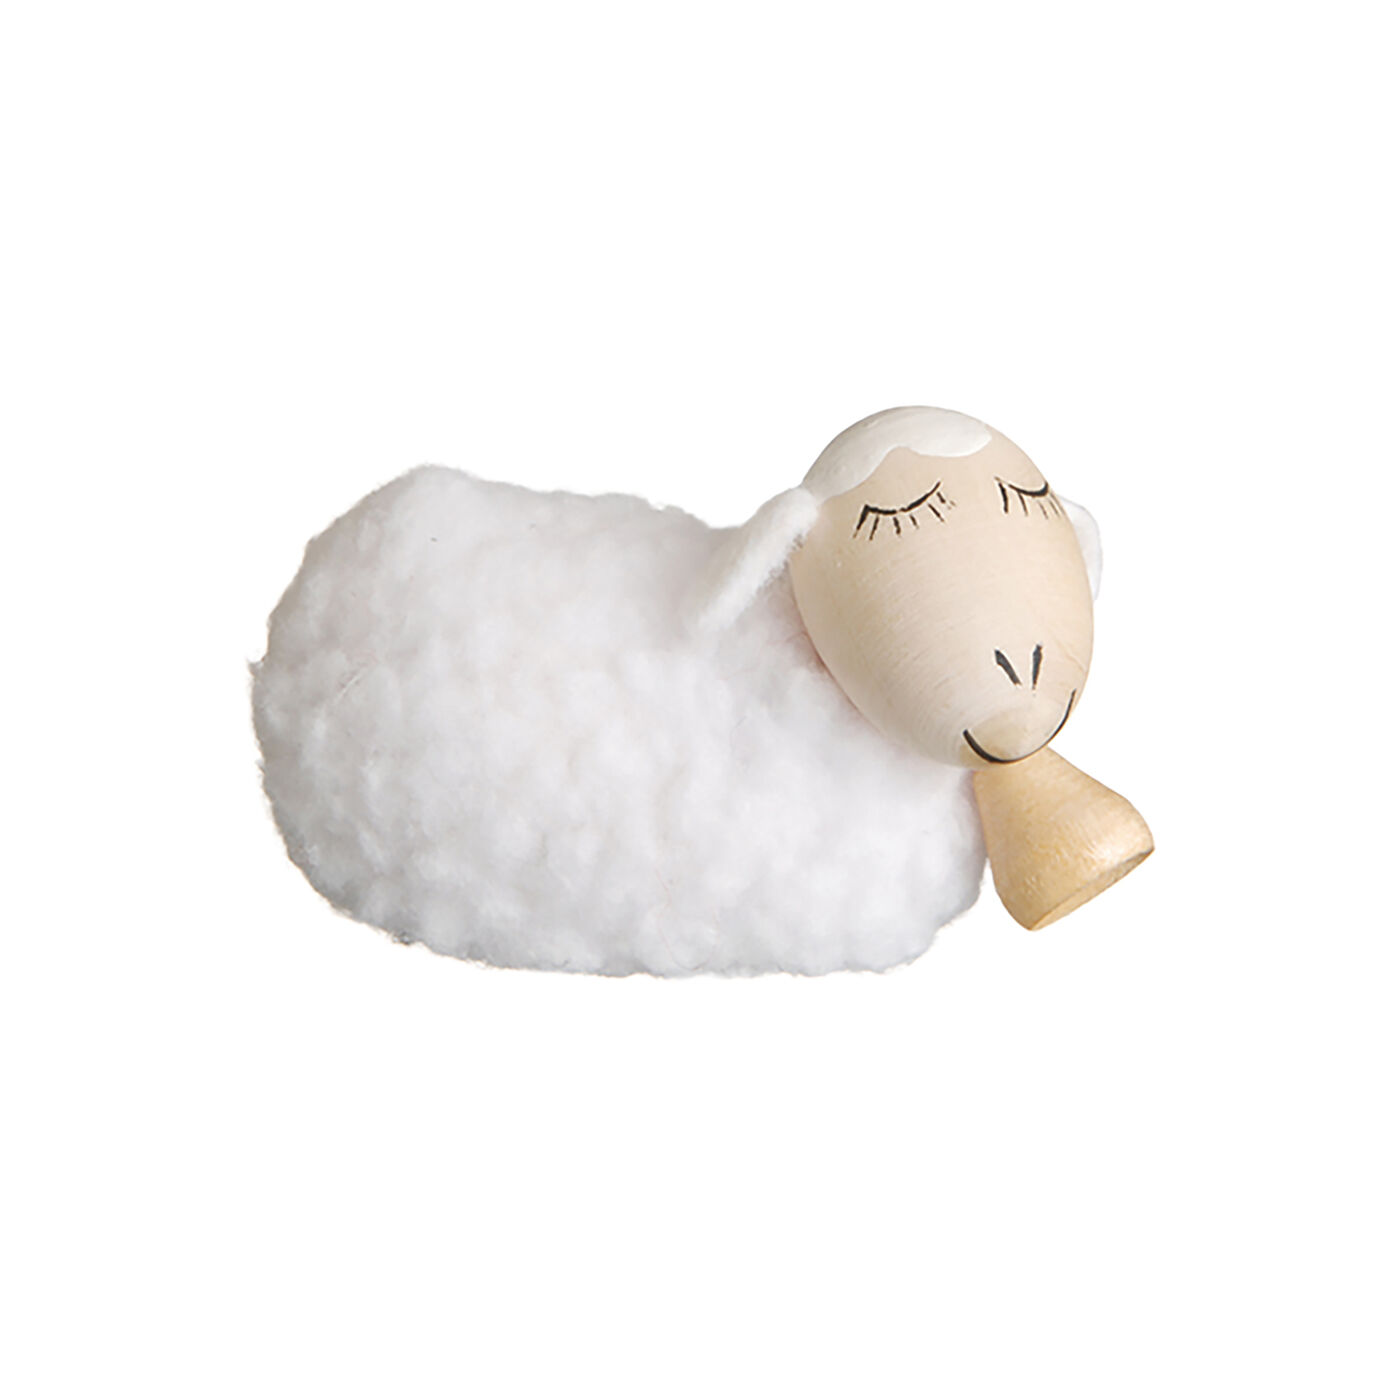 SeeMONO|ヨーロッパの職人が手作りした北欧の妖精〈白羊　中〉／ノルディカニッセ|お届けは〈白羊 中〉です。